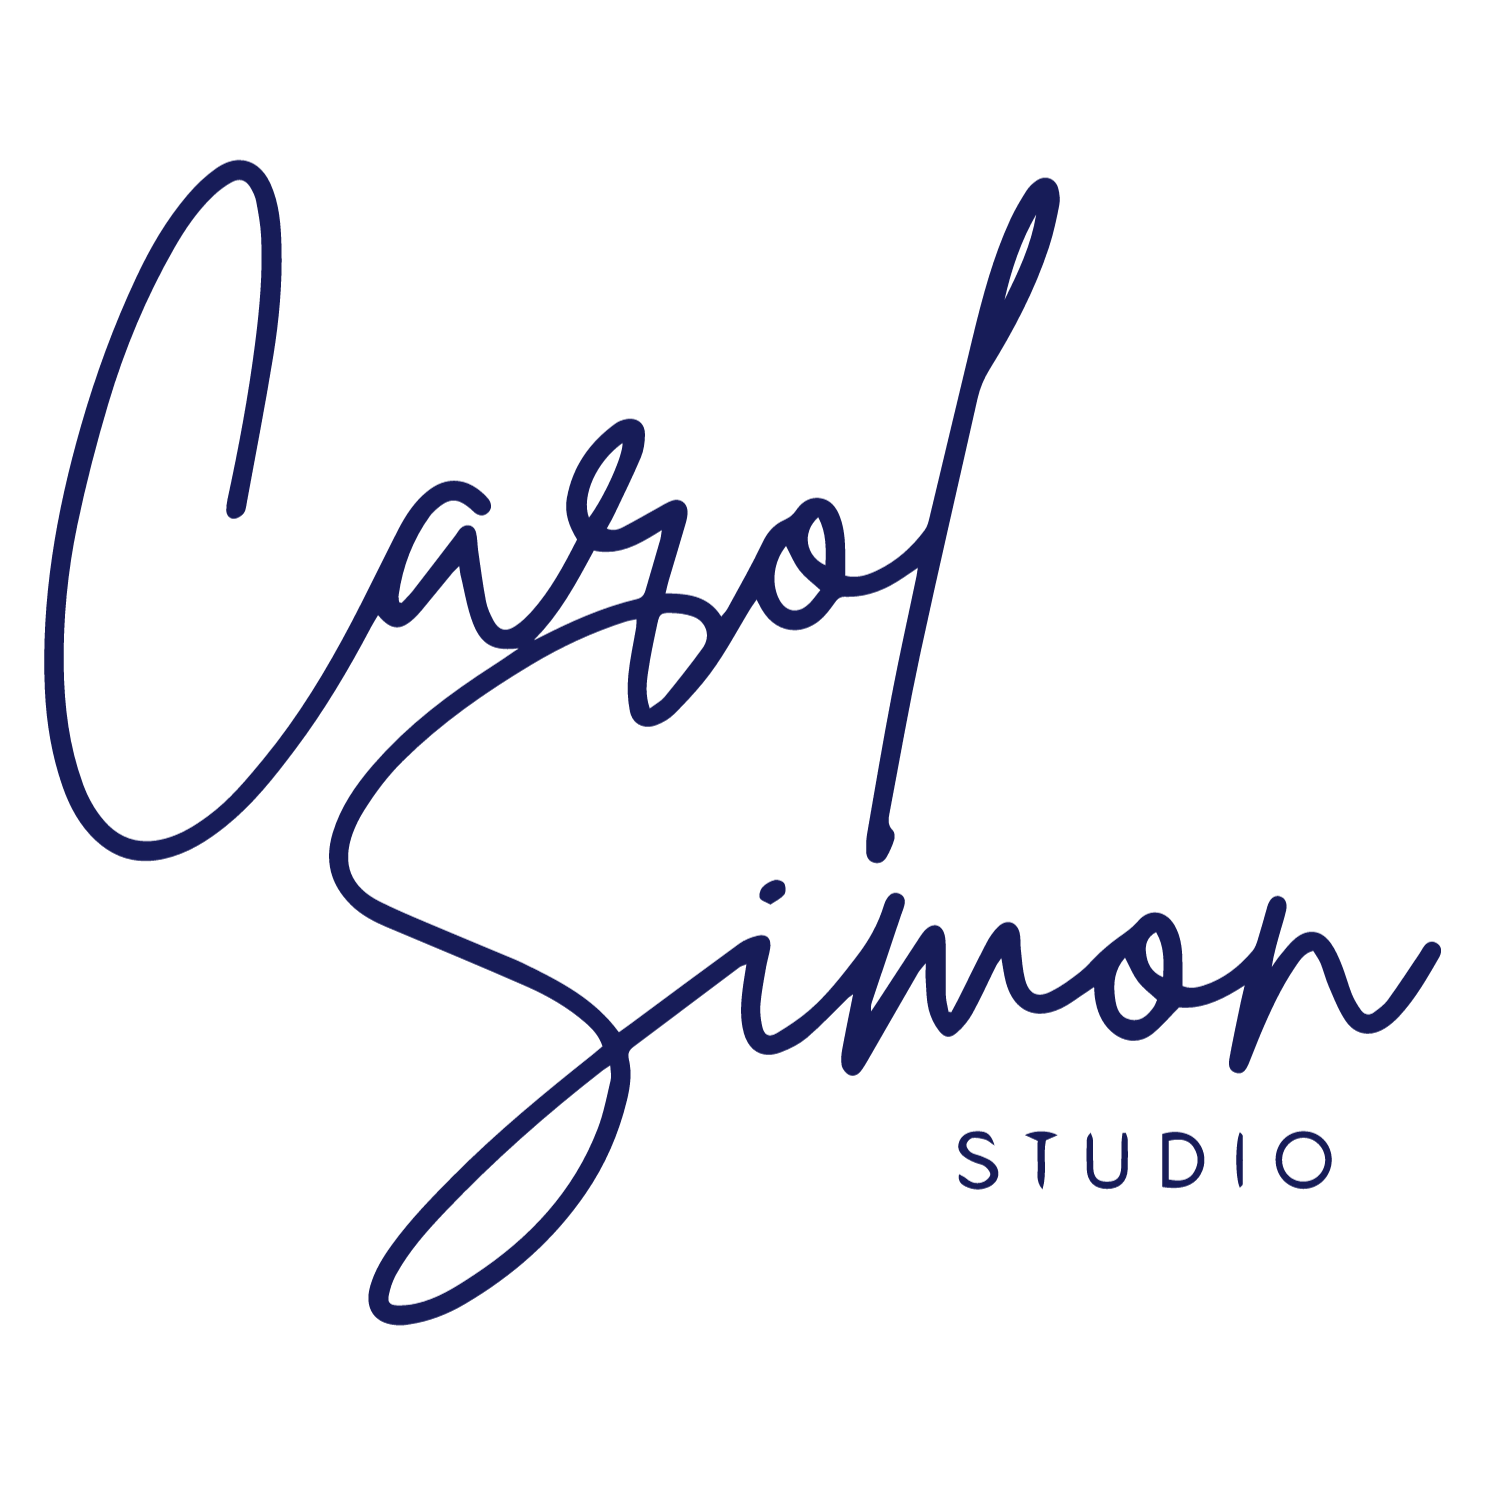 Carol Simon Studio